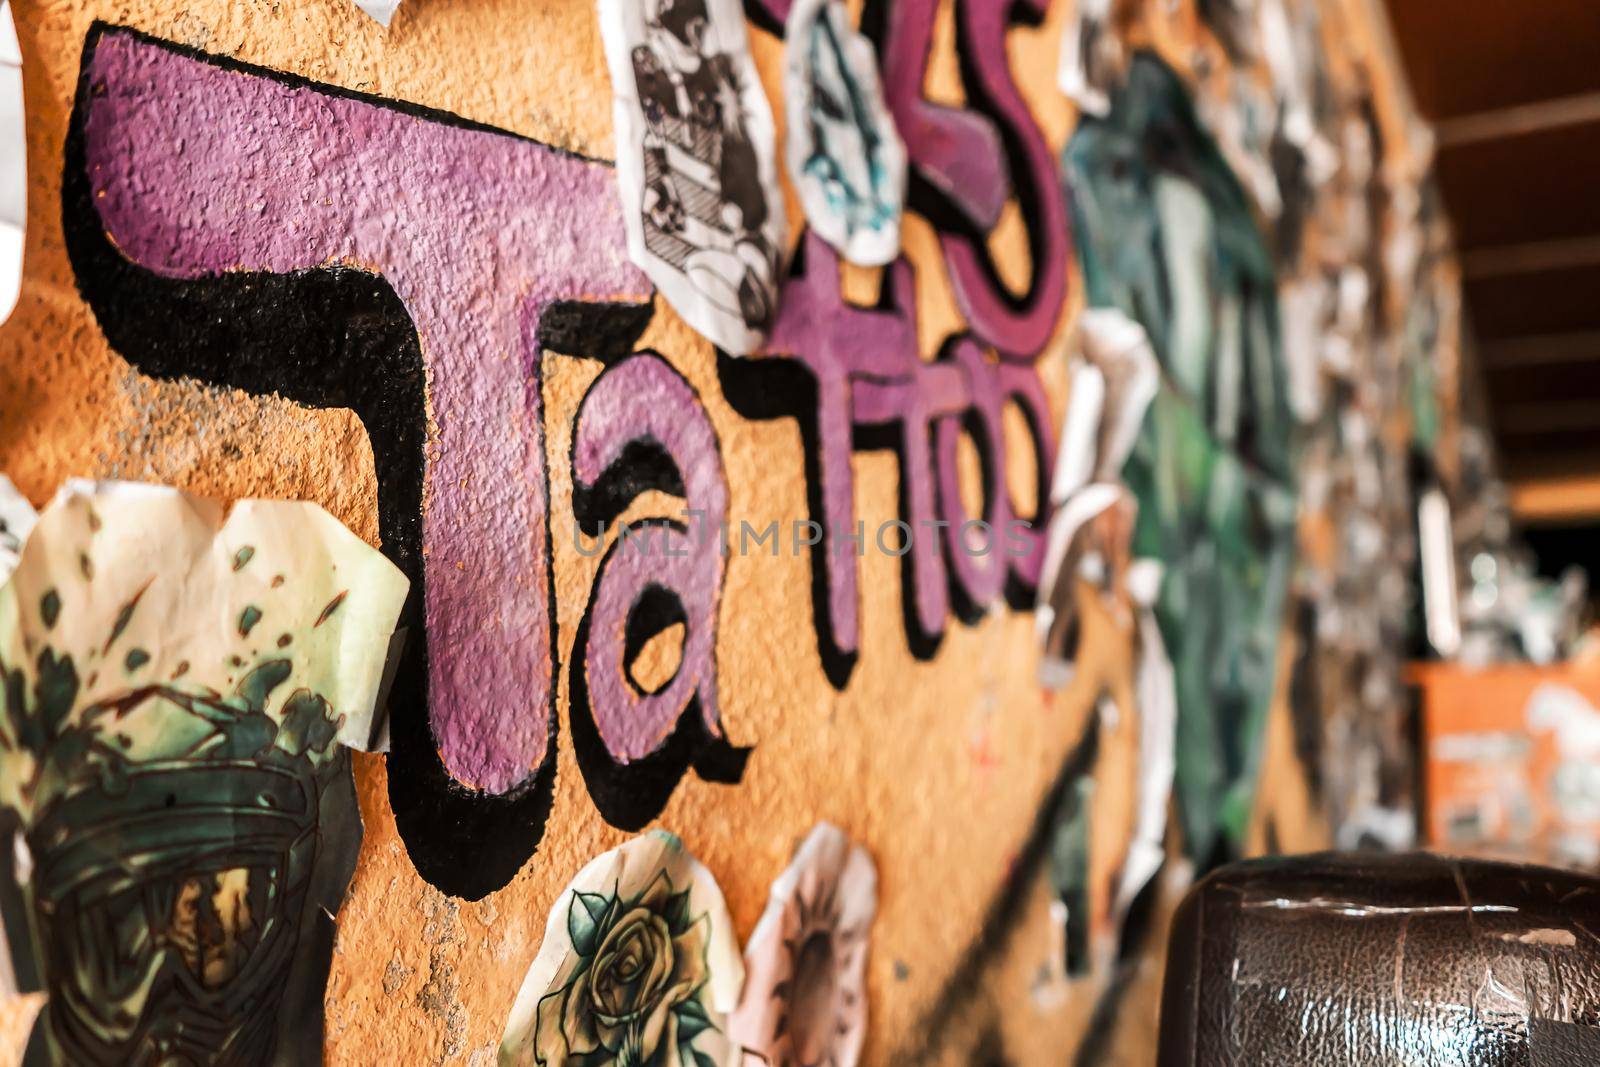 Tattoo studio wall in a salon in Latin America by cfalvarez